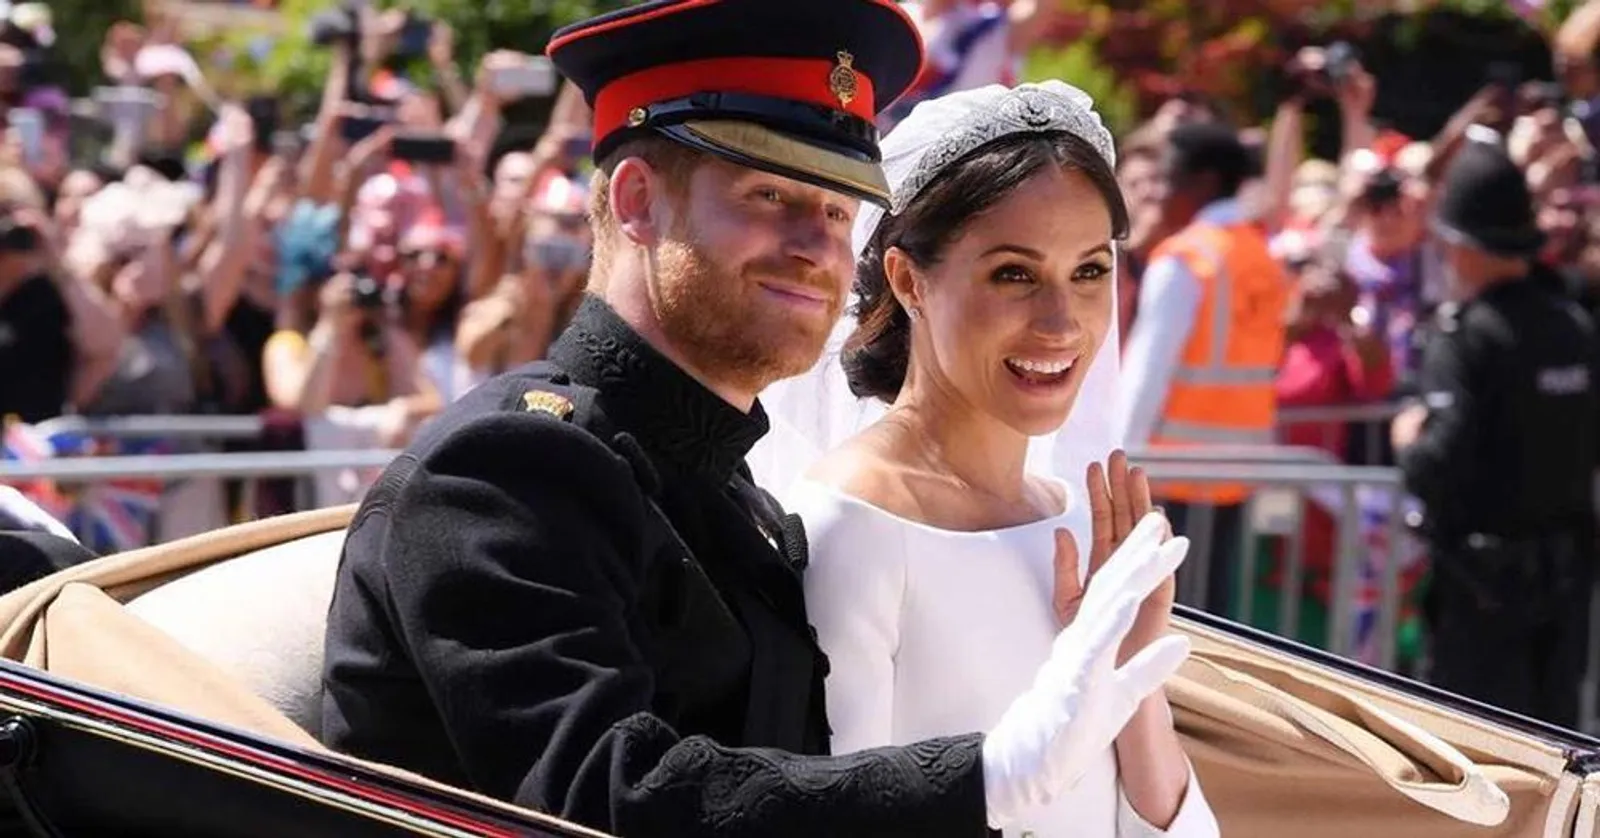 Kreatif, Tamu Royal Wedding Jual Lagi Suvenir dengan Harga Fantastis